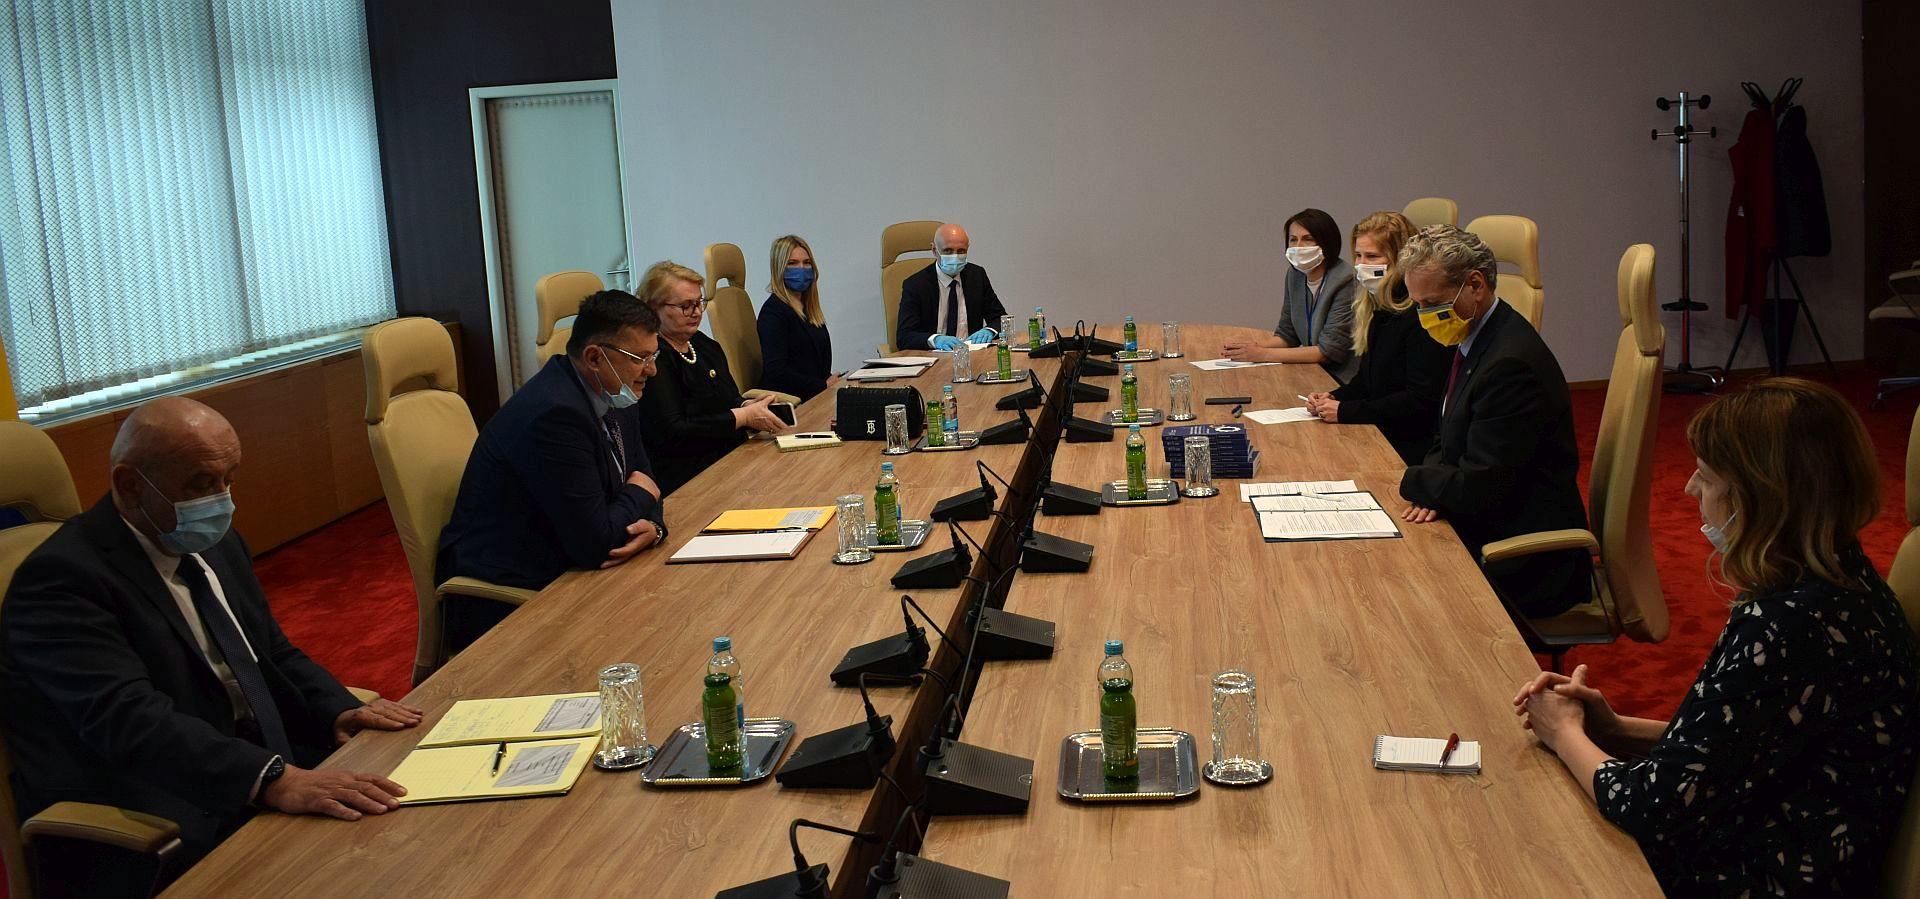 Sastanku prisustvovali i ministri Bevanda i Turković - Avaz